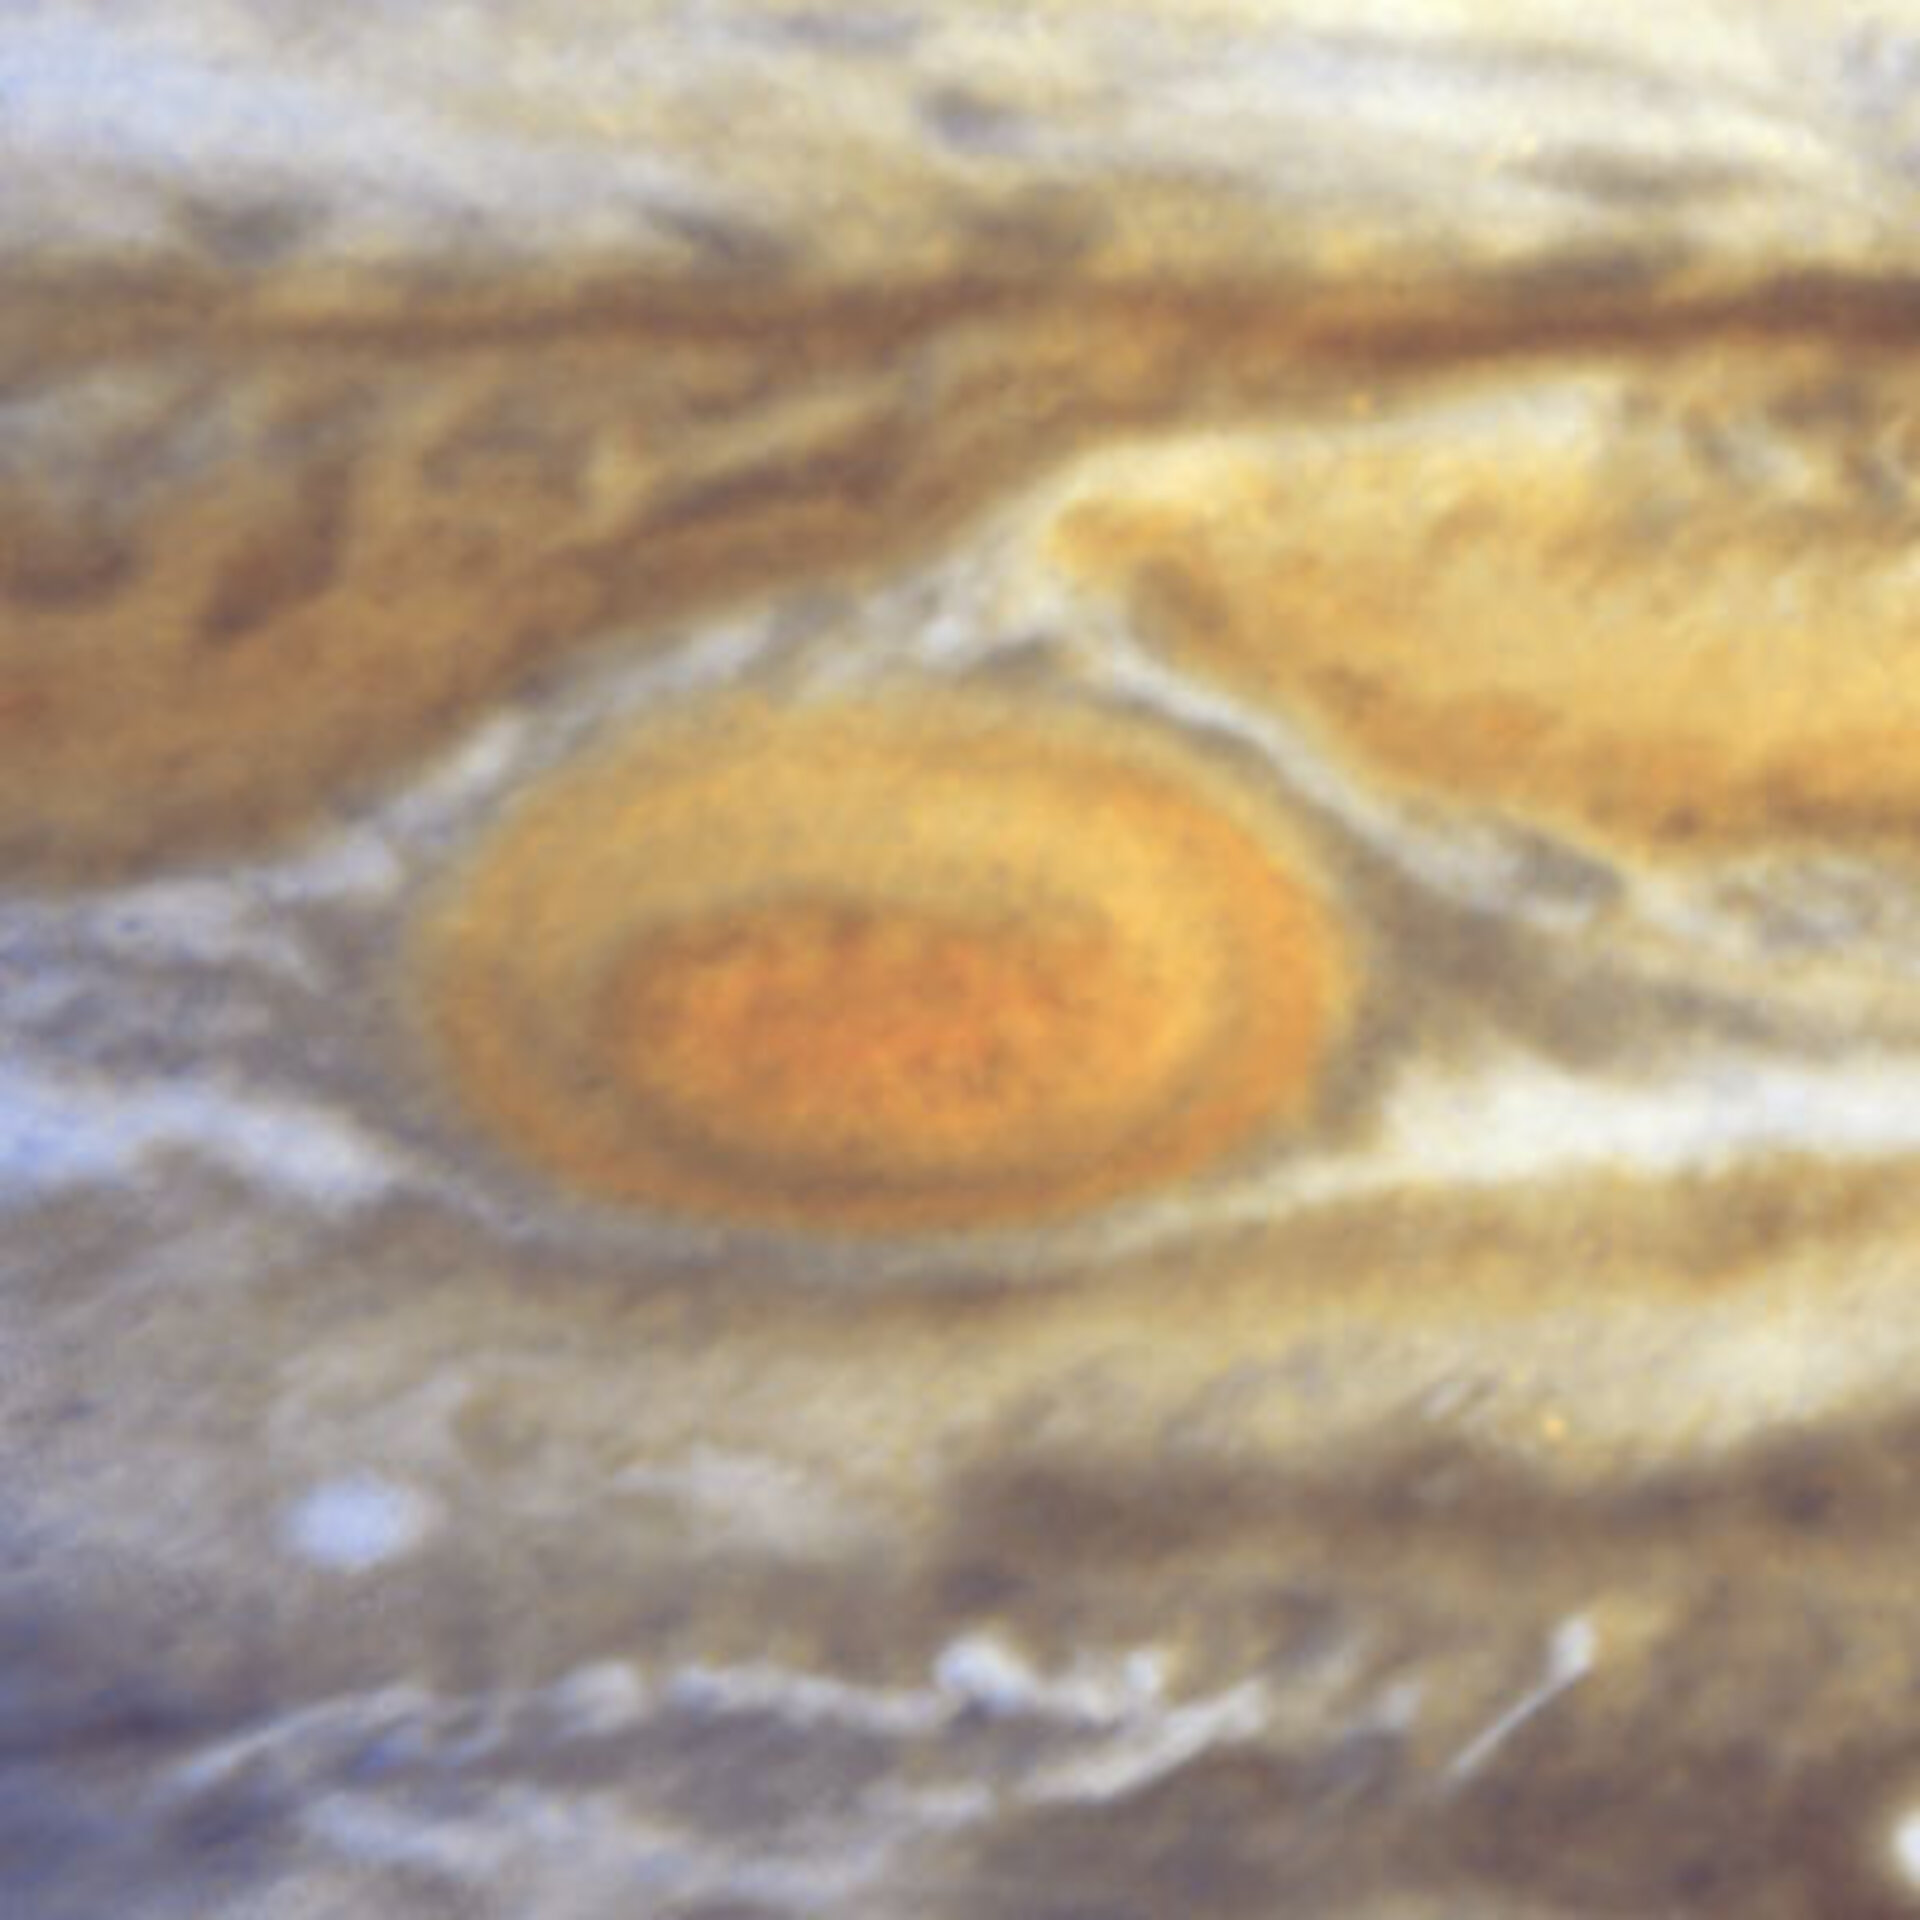 Jupiter's Great Red Spot